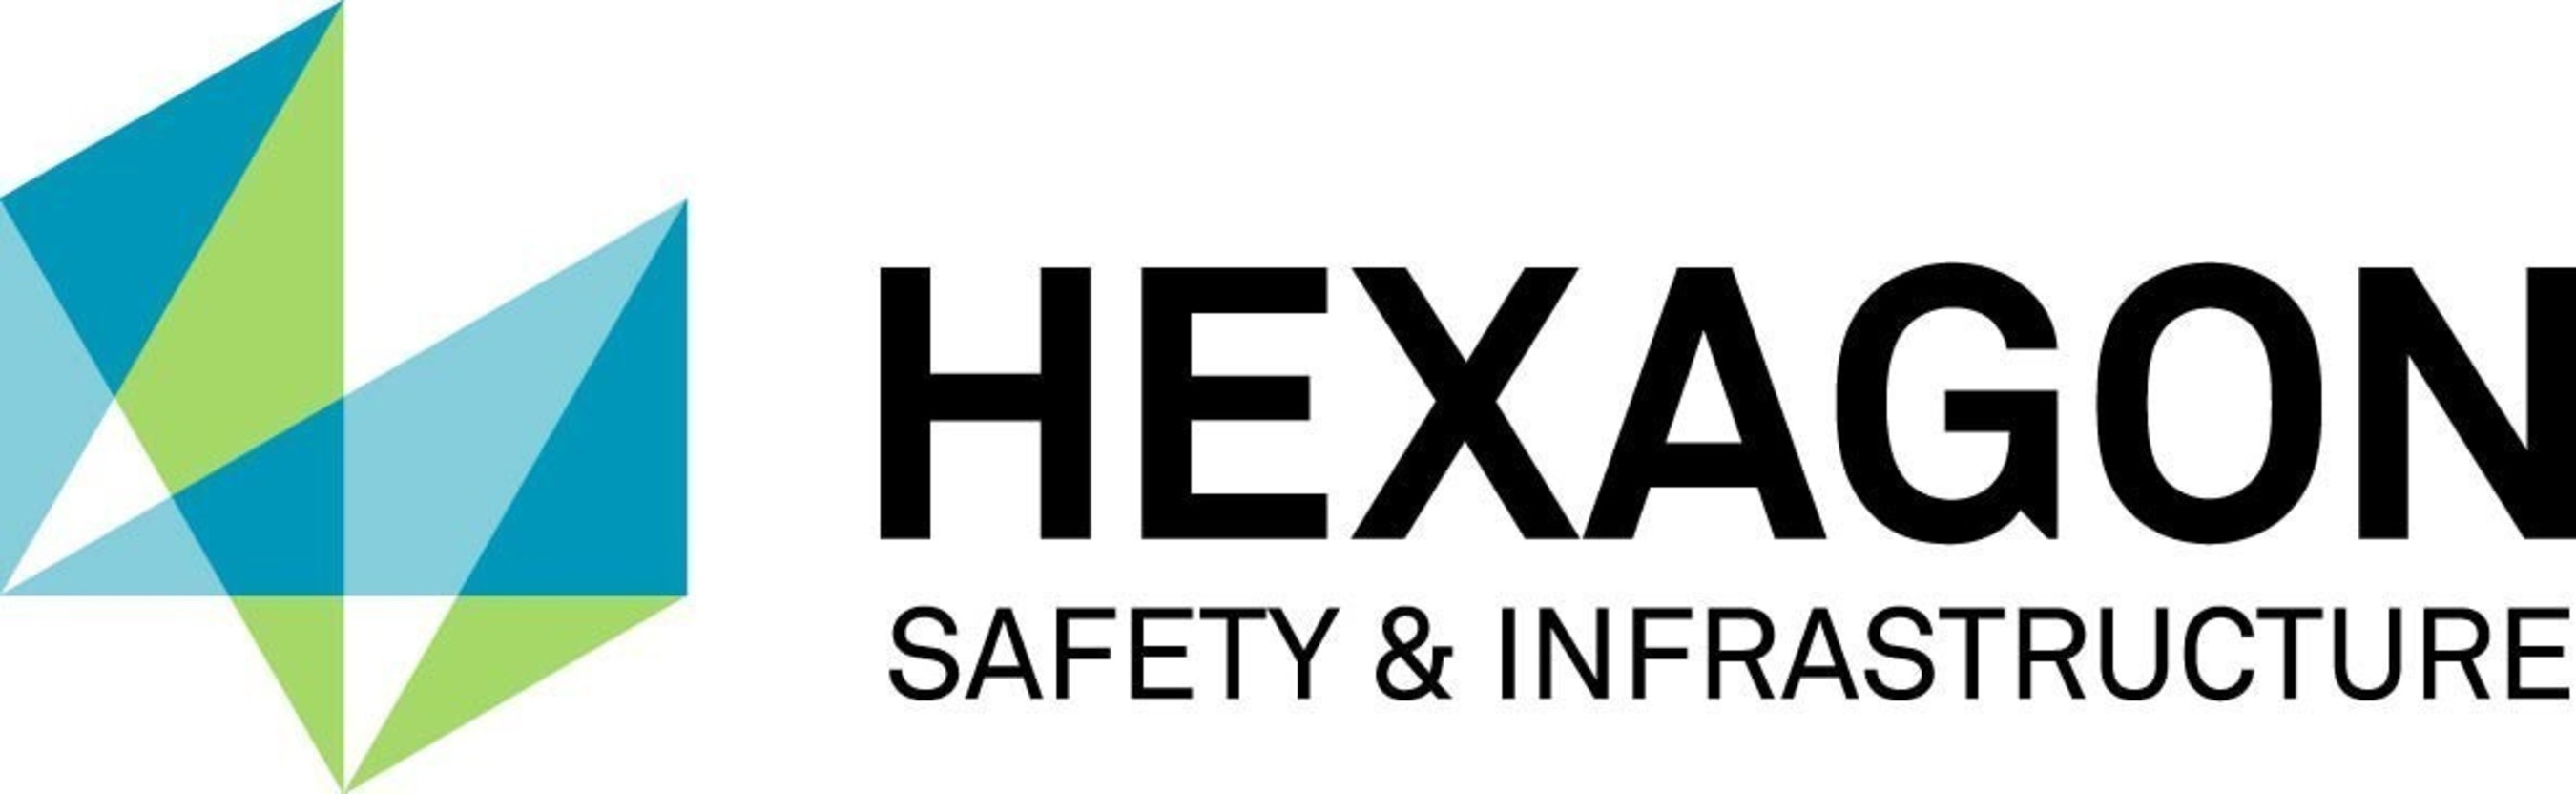 Hexagon Safety & Infrastructure Logo